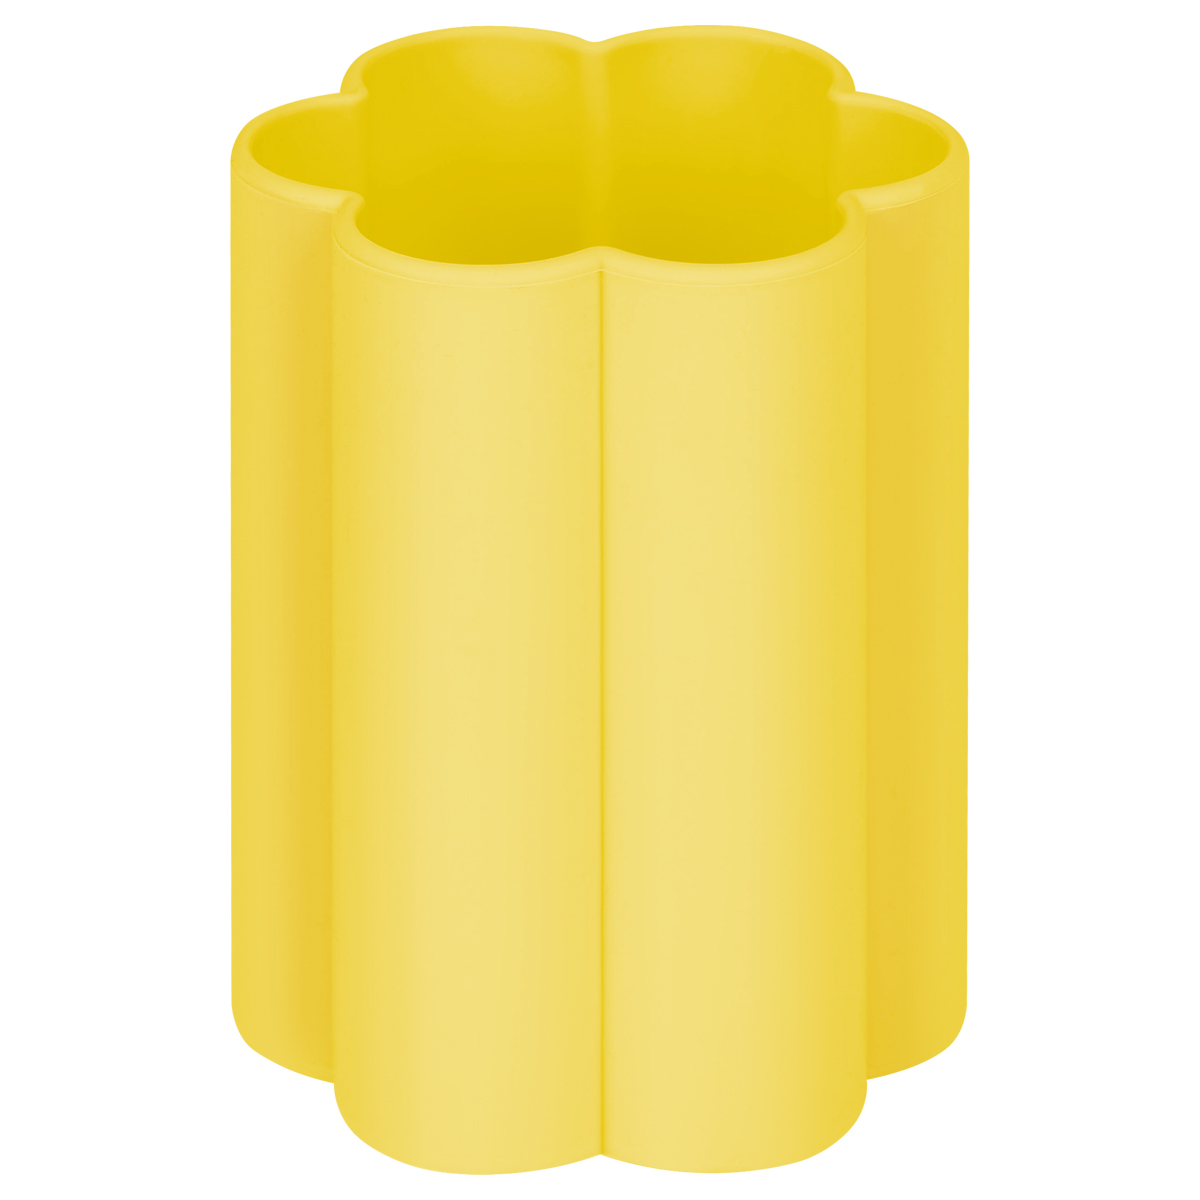 Стаканчик для рисования Мульти-Пульти силиконовый фигурный желтый, 160 мл, европодвес